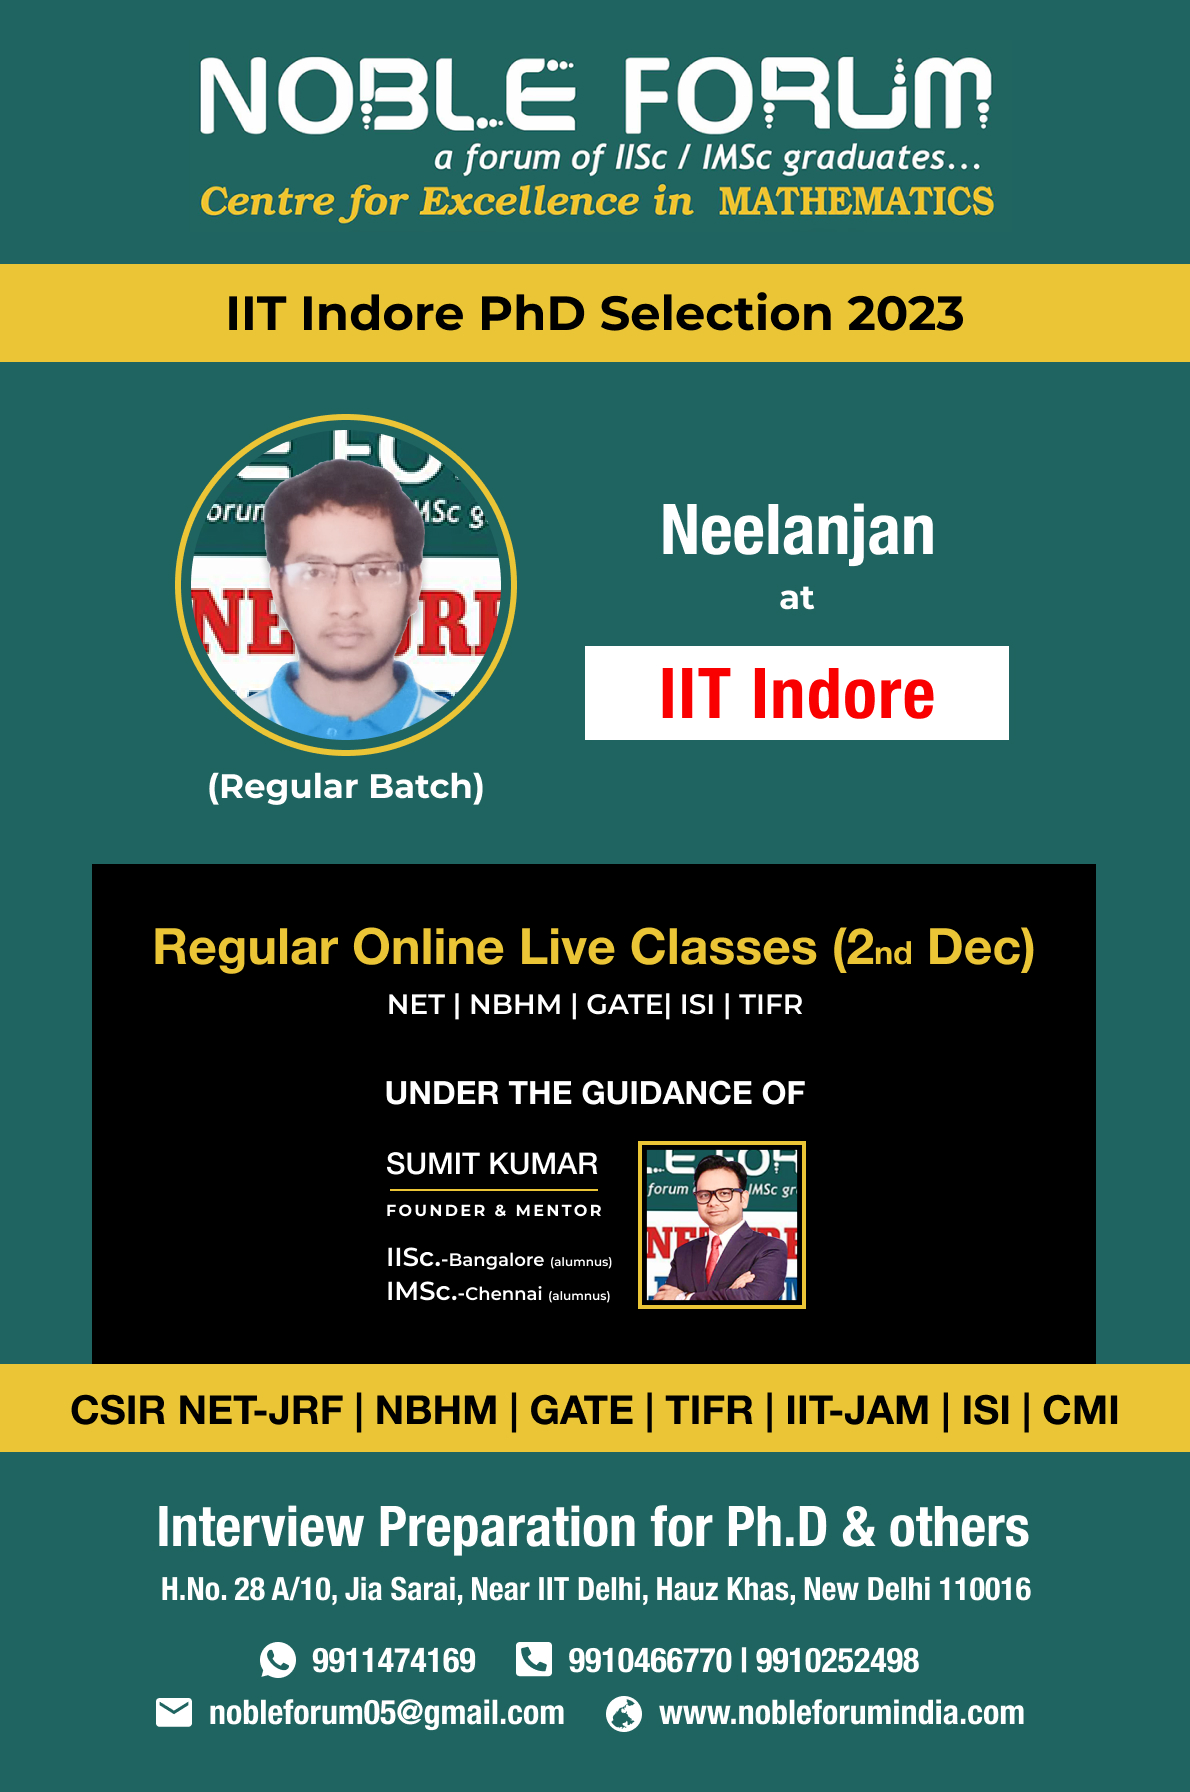 Neelanjan-IIT Indore